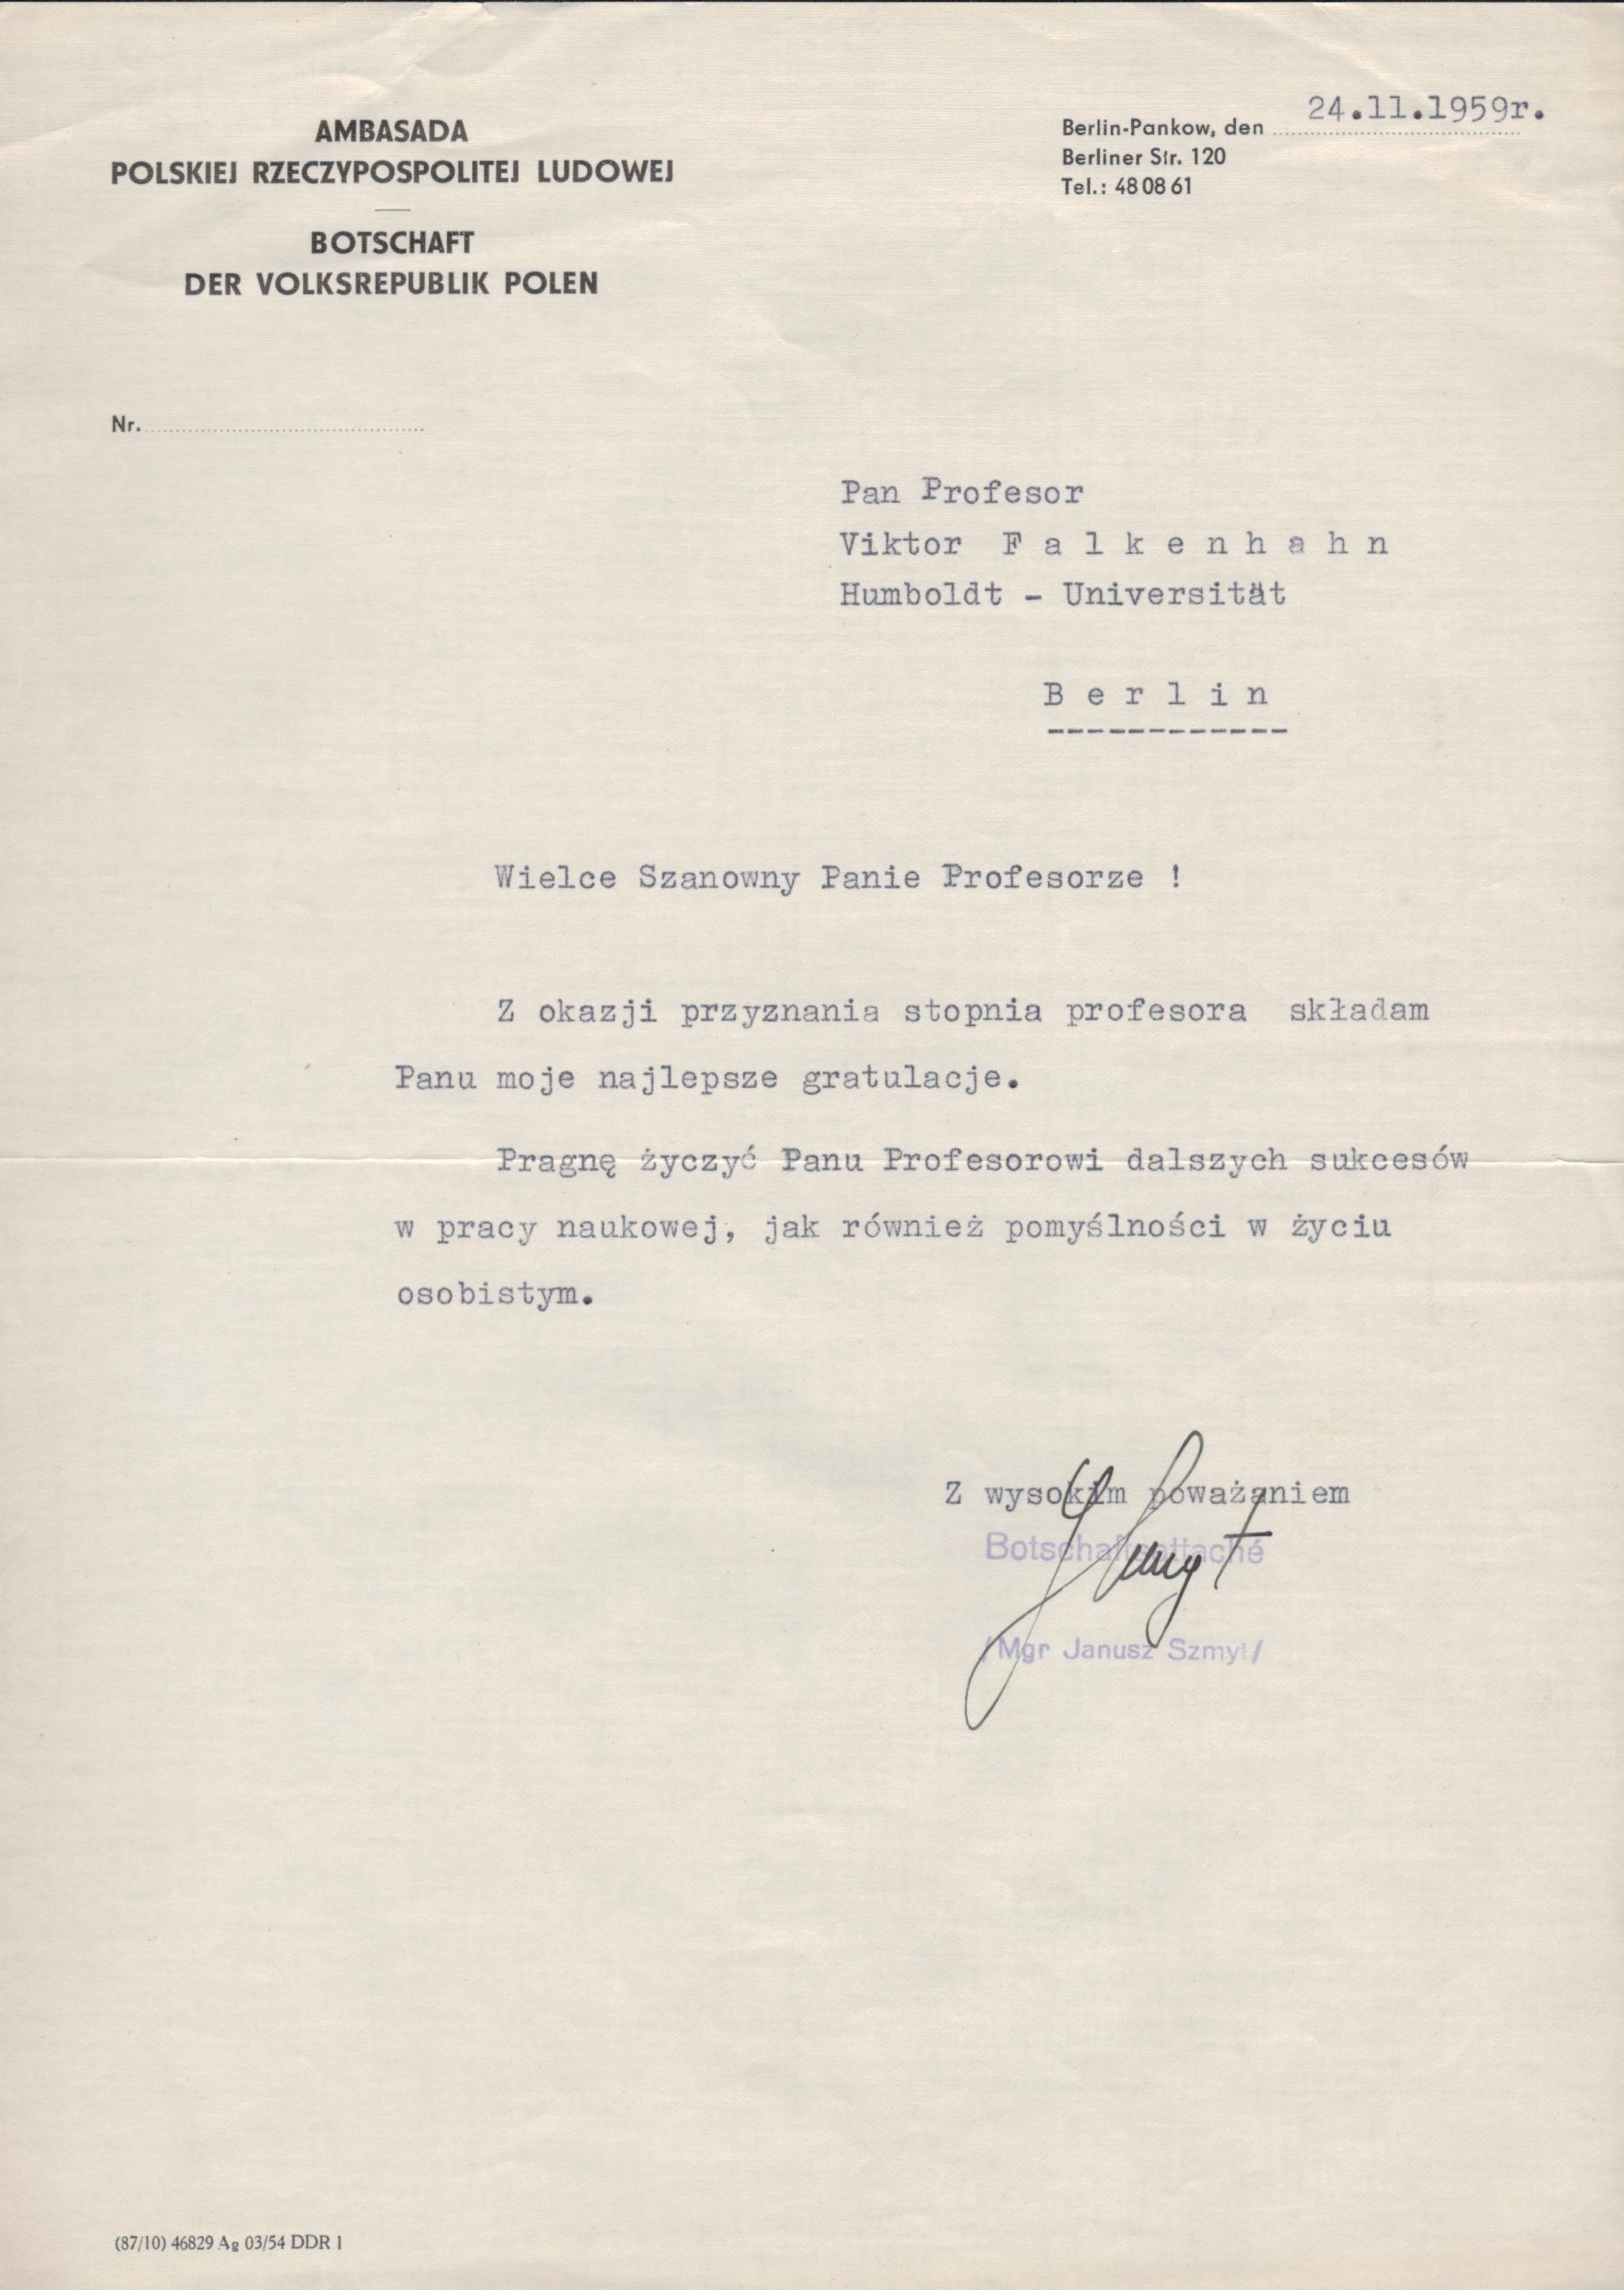 Lenkijos ambasados Vokietijoje sveikinimas V. Falkenhanui profesoriaus vardo suteikimo proga. Berlynas. 1959.11.24. MLLM P26468